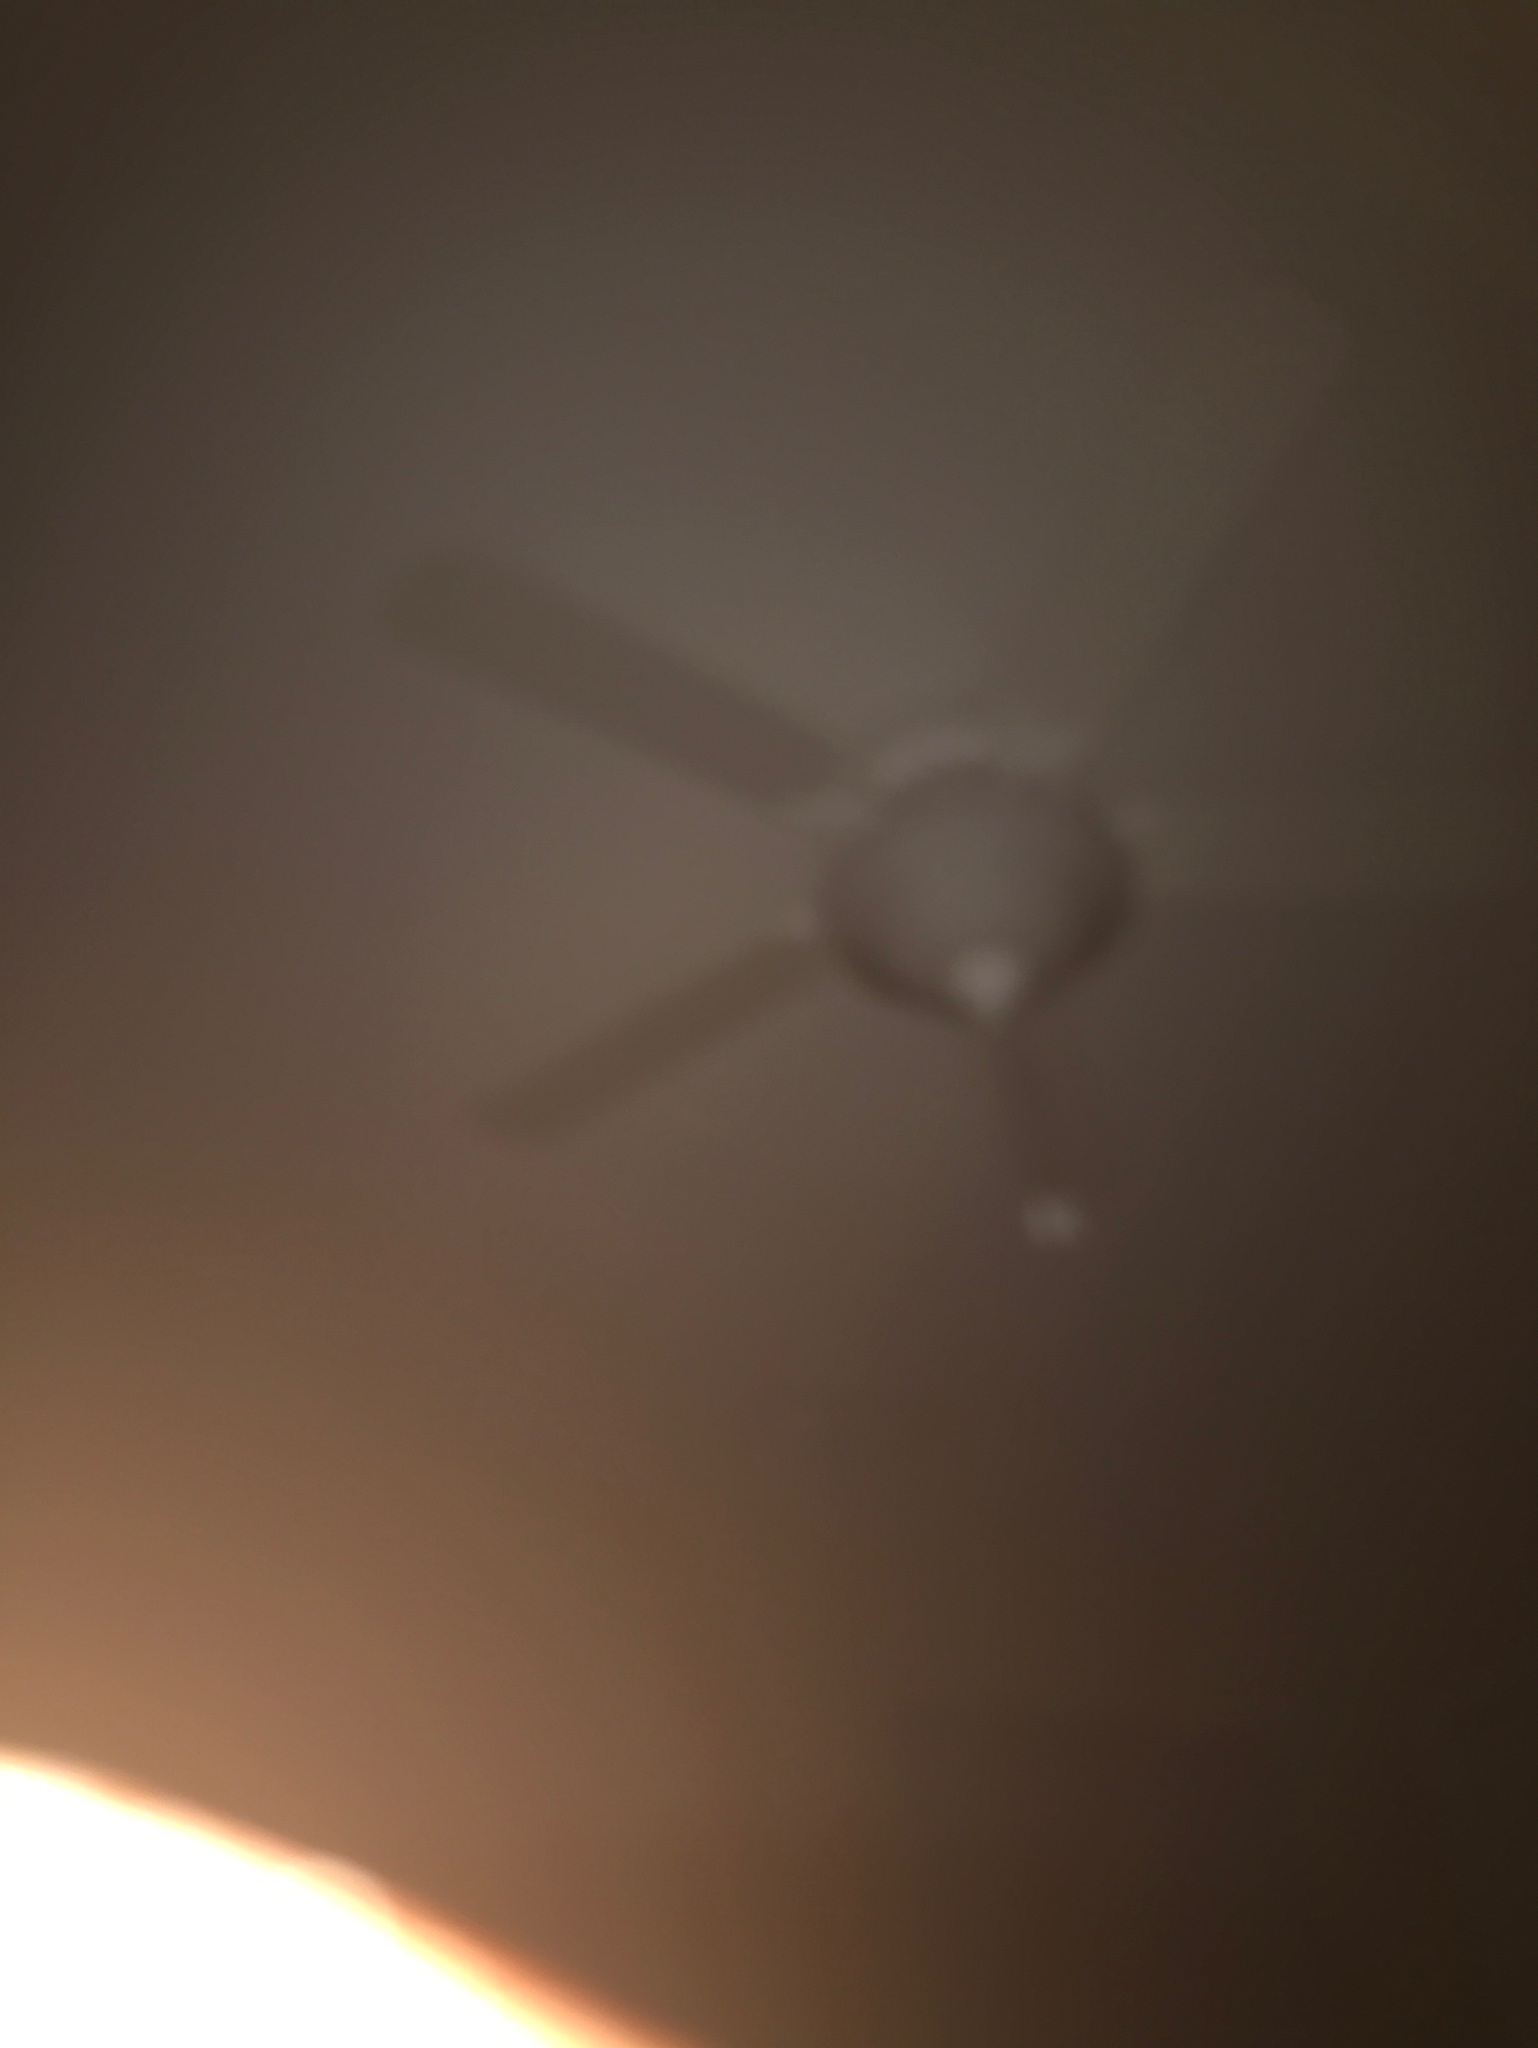 my fan at night - meme